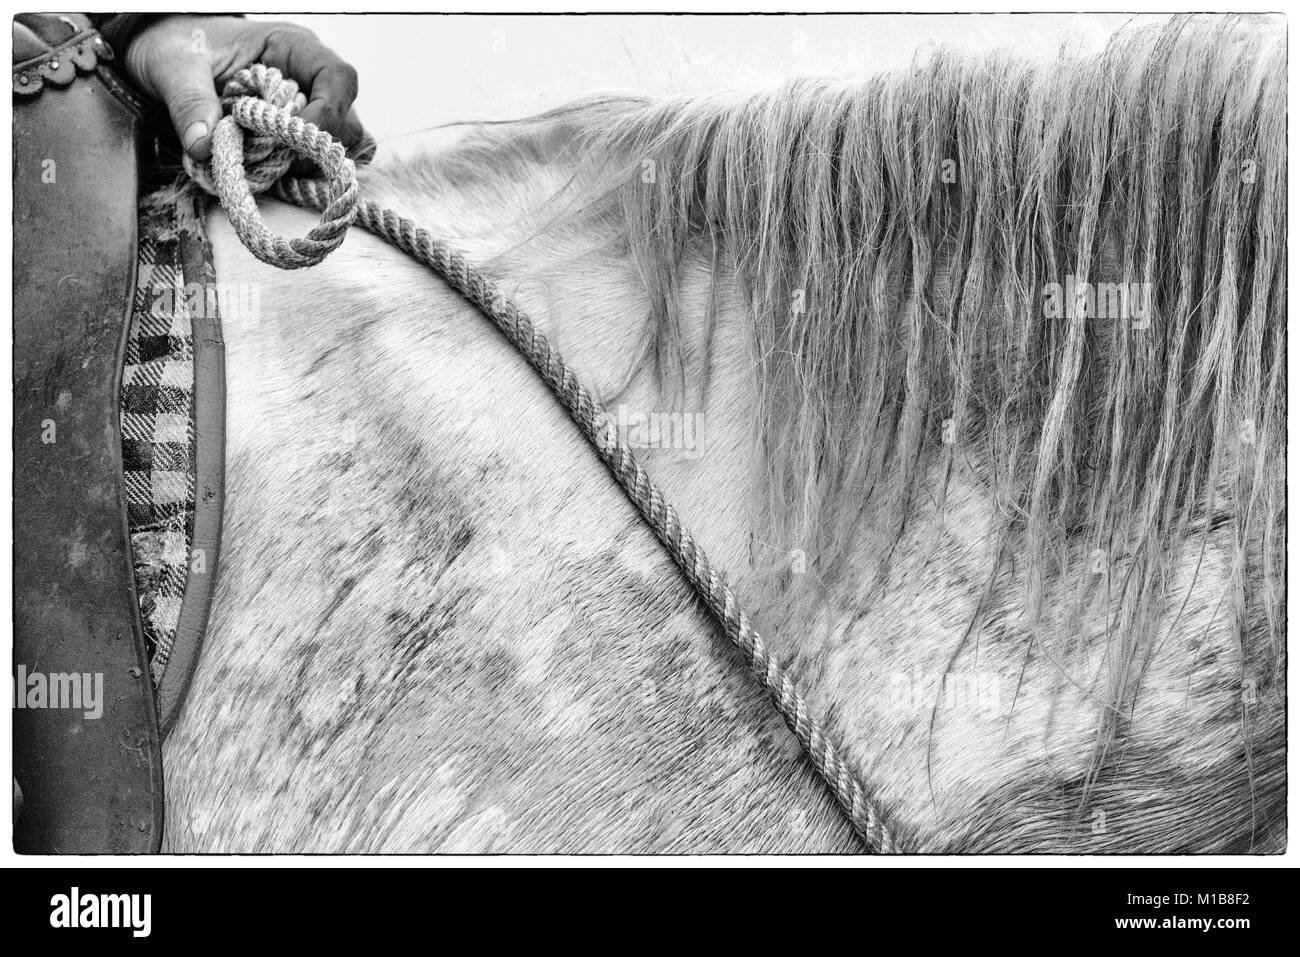 In der Nähe der Camargue Pferde Mähne und Seil Zügel und Reiter (Equus caballus), in der Nähe von Saintes-Marie-de-la-Mer, Camargue, Frankreich, Europa Stockfoto